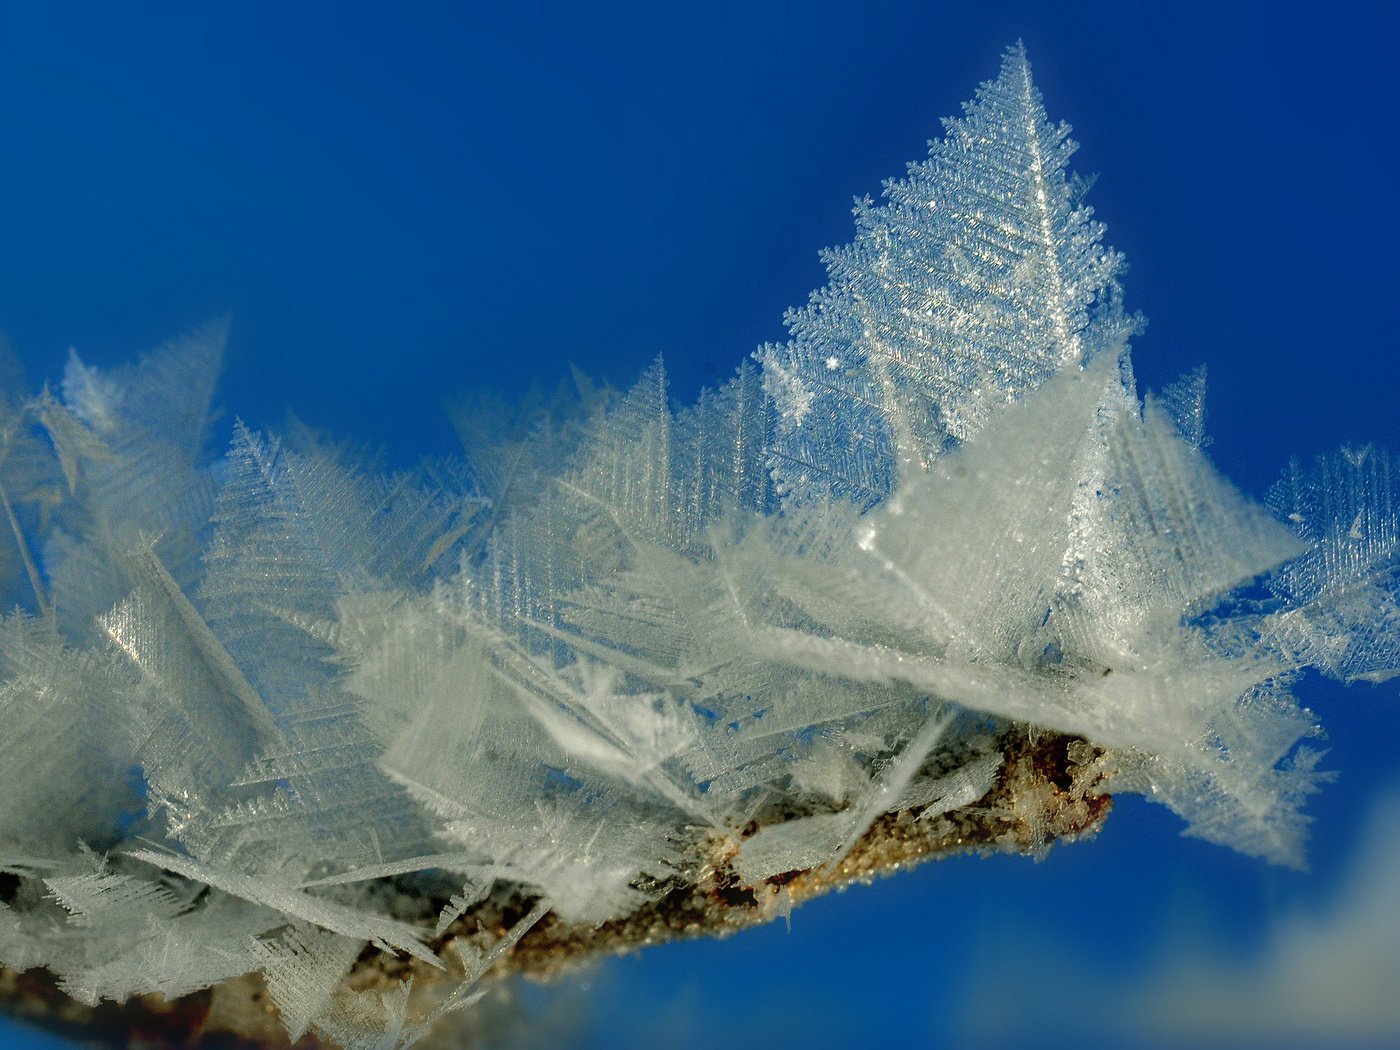 Кристаллы льда